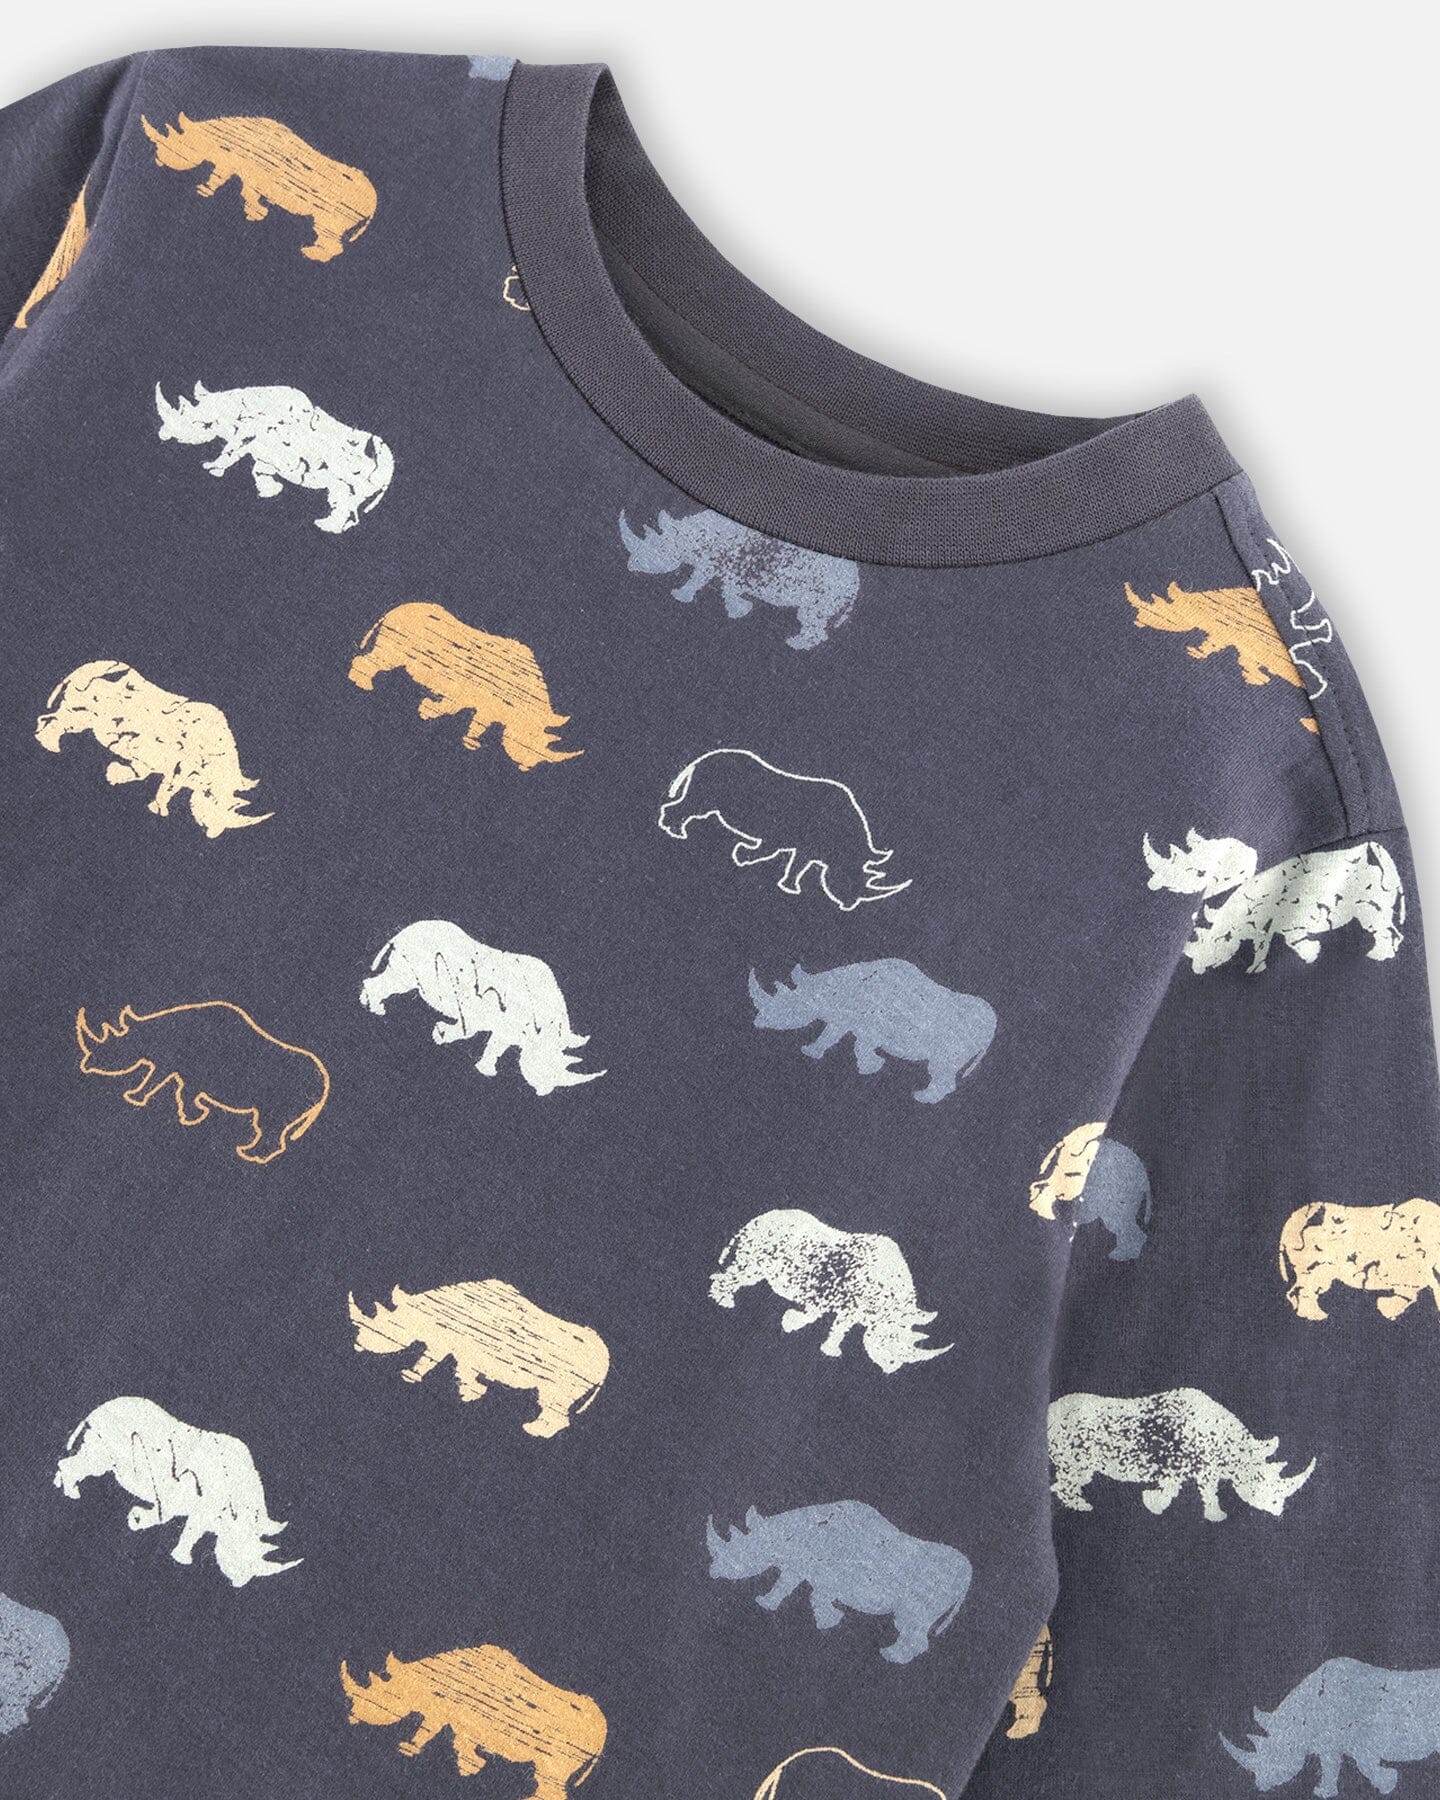 Printed Rhinoceros Jersey T-Shirt Ebony Grey - F20U71_493